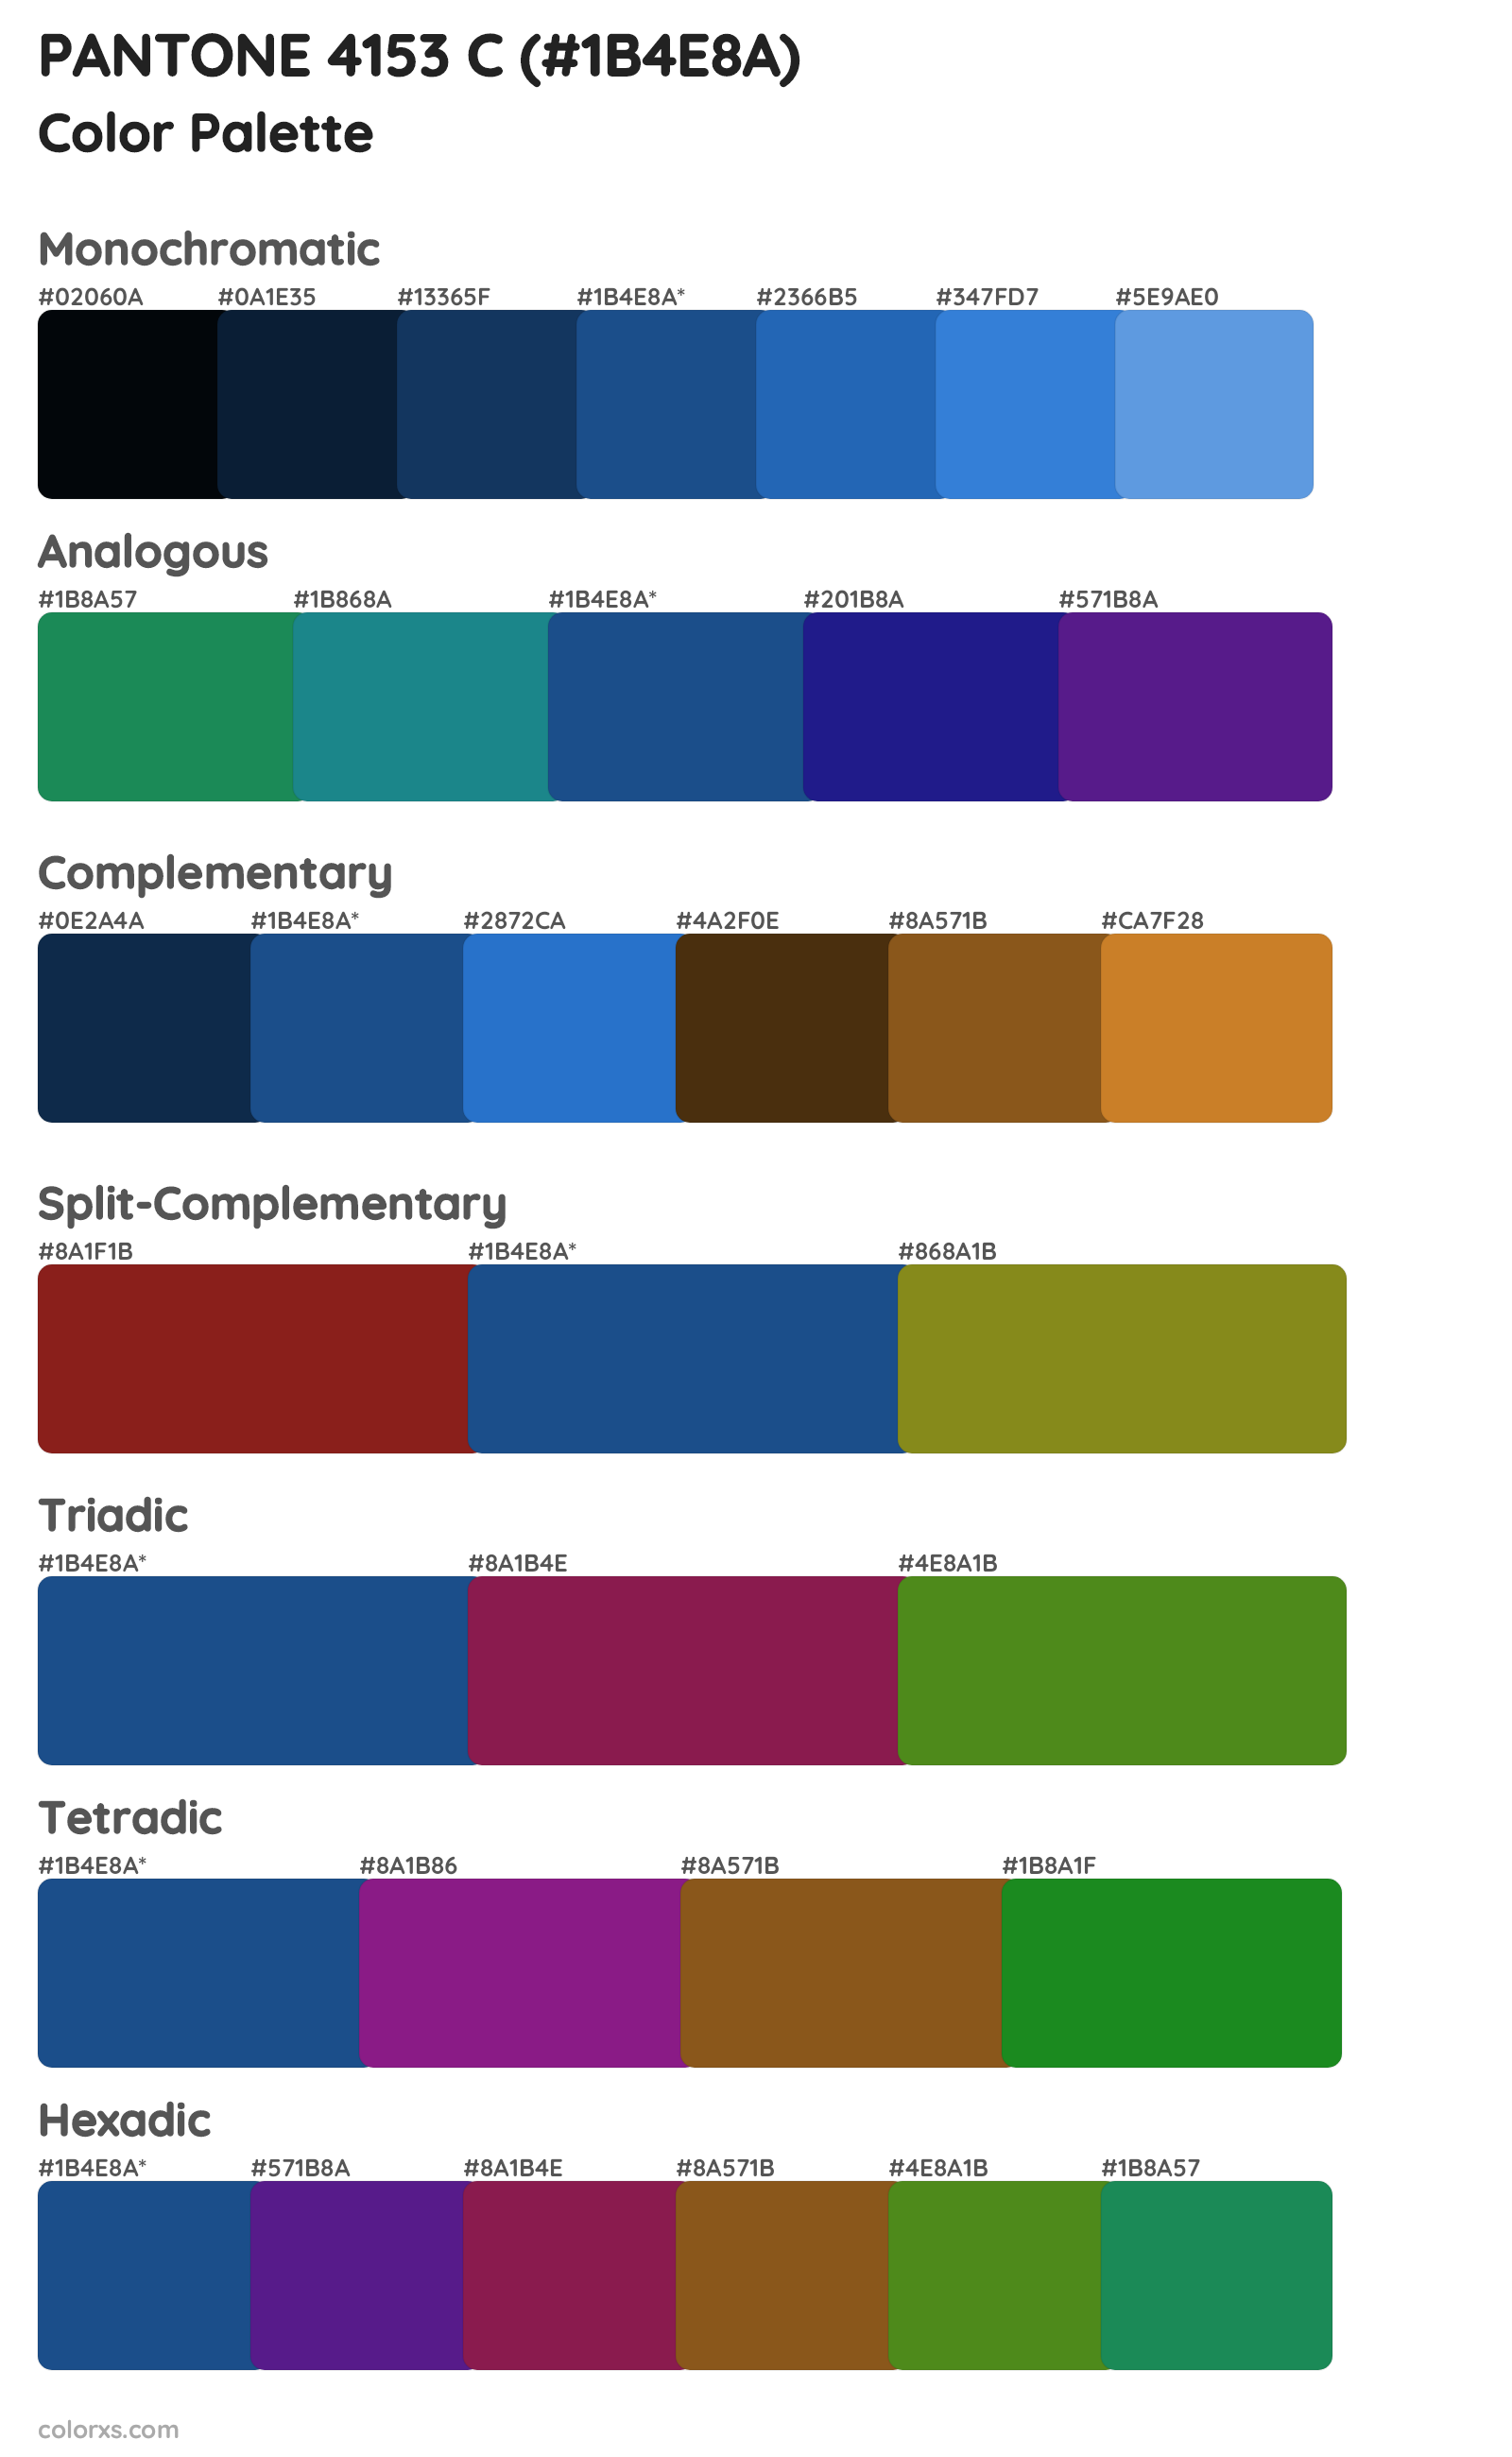 PANTONE 4153 C Color Scheme Palettes